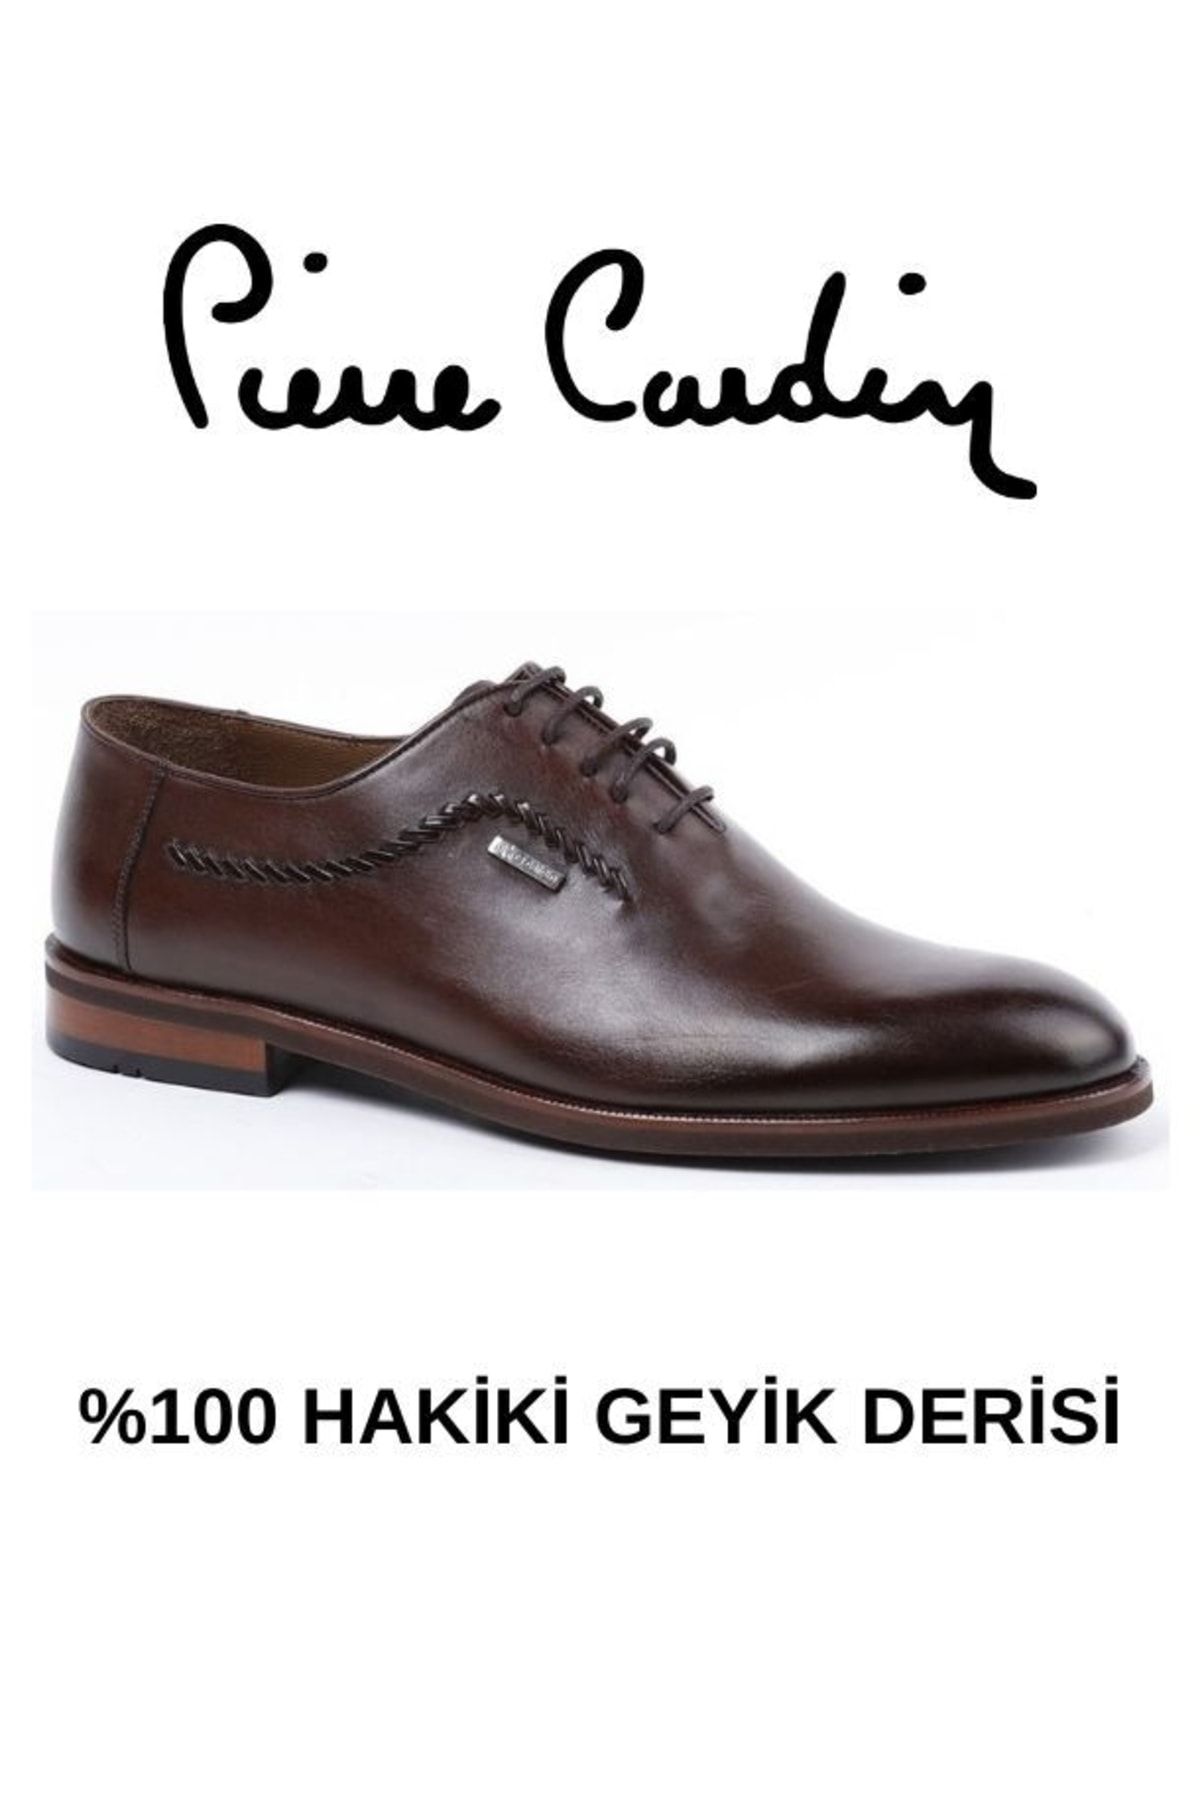 Pierre Cardin Exclusıve Hakiki Geyik Derisi Kahverengi Erkek Klasik Ayakkabı